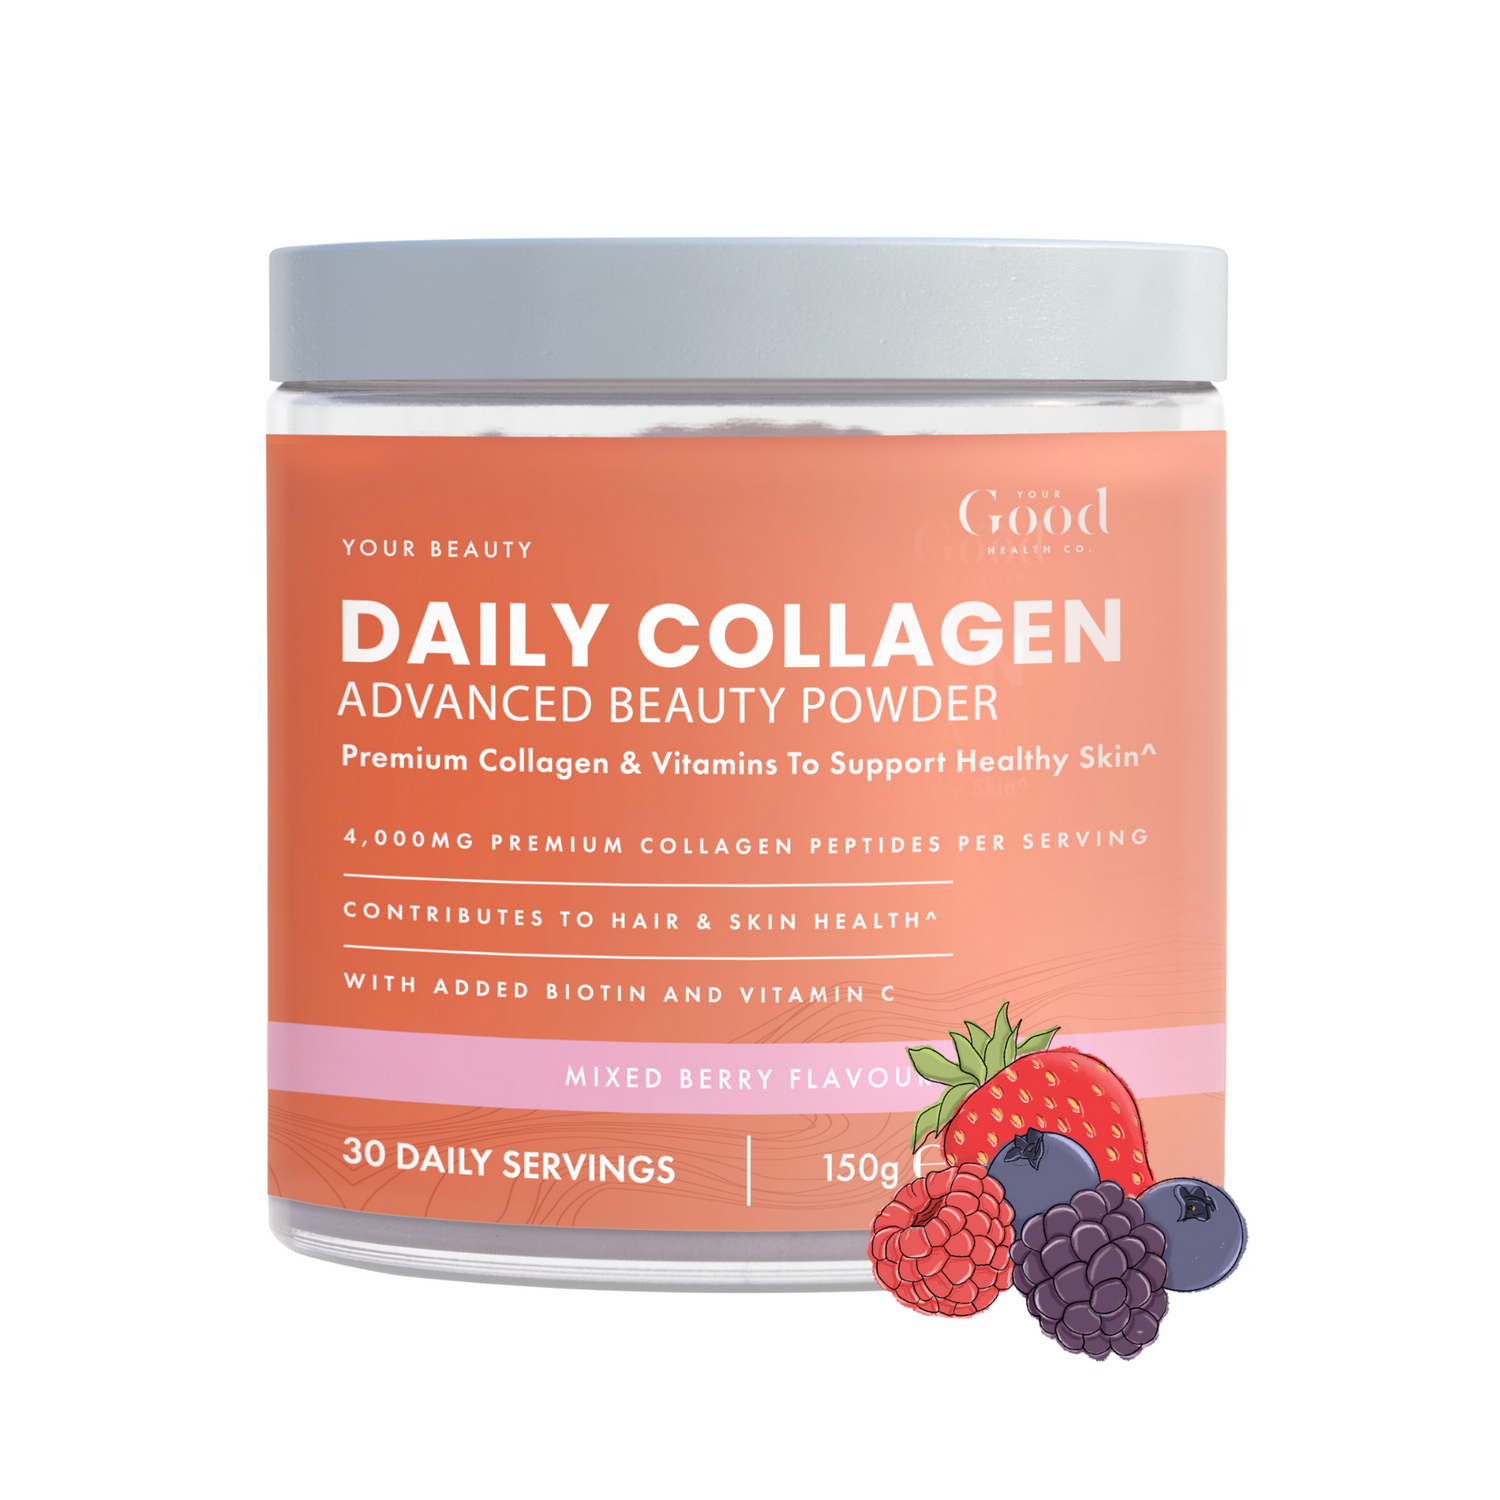 Daily Collagen Powder